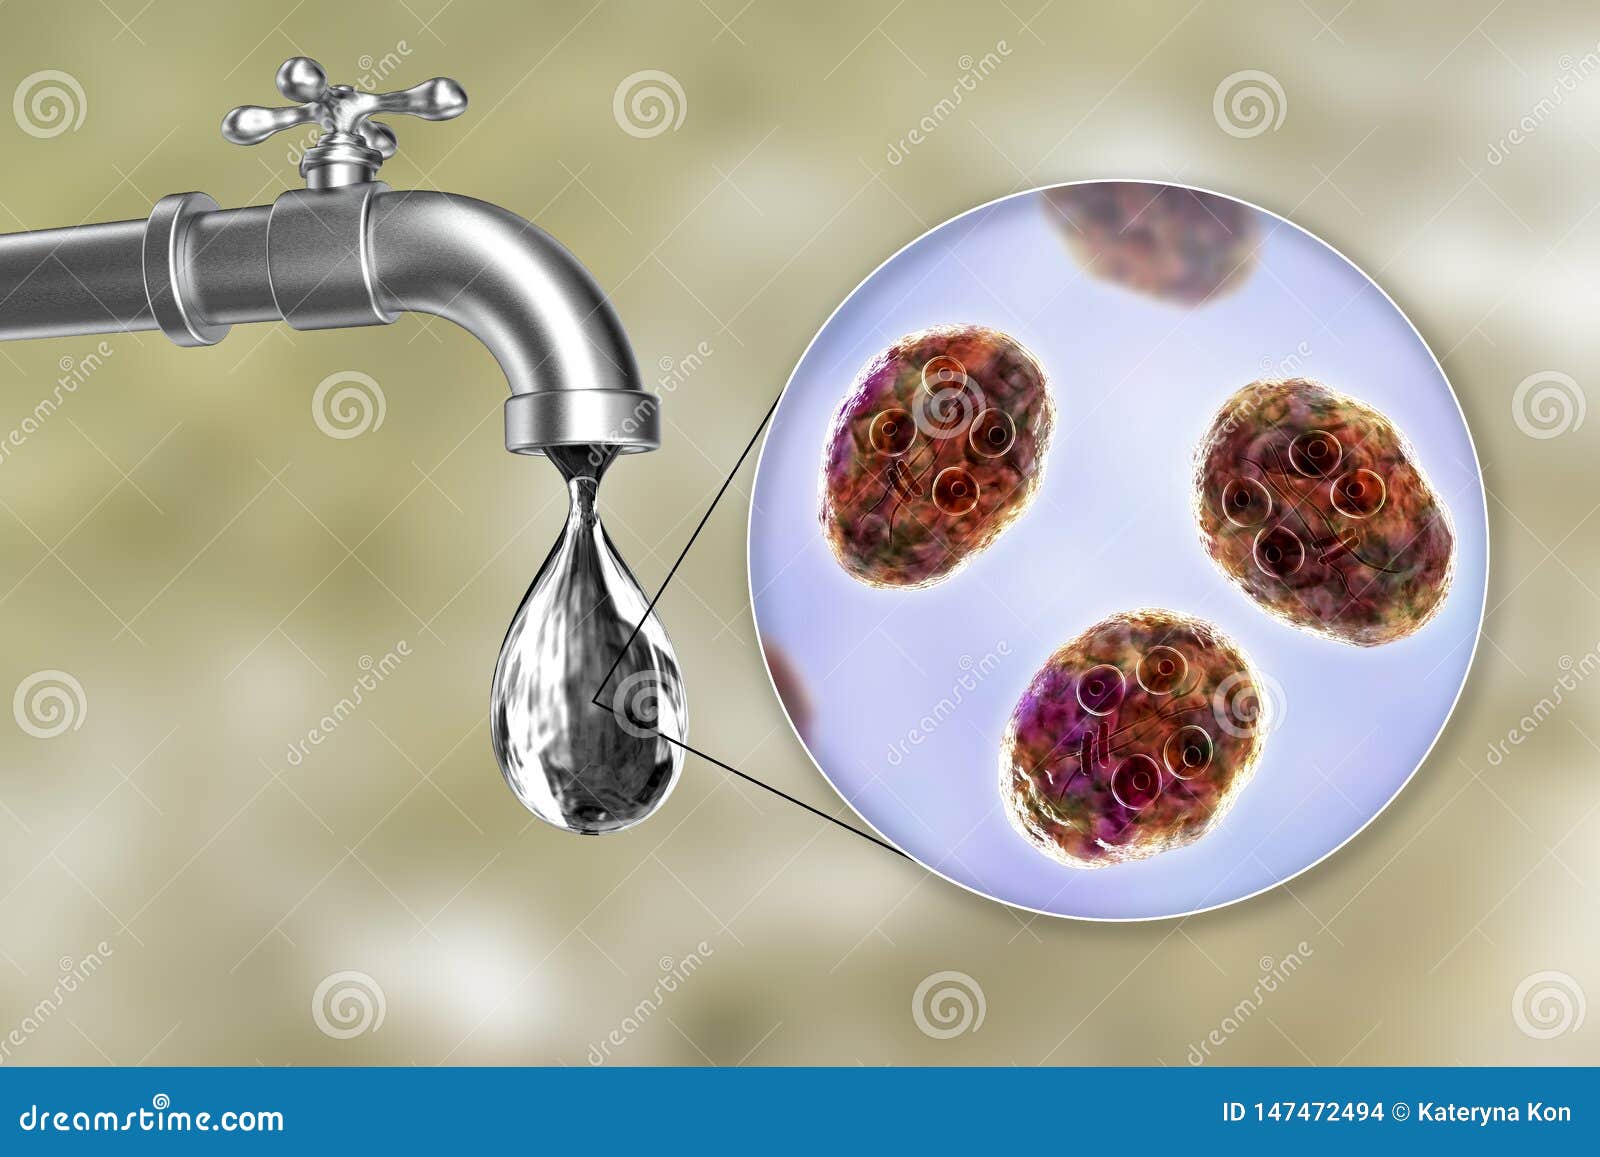 giardia in drinking water vérszegénység és férgek kezelése